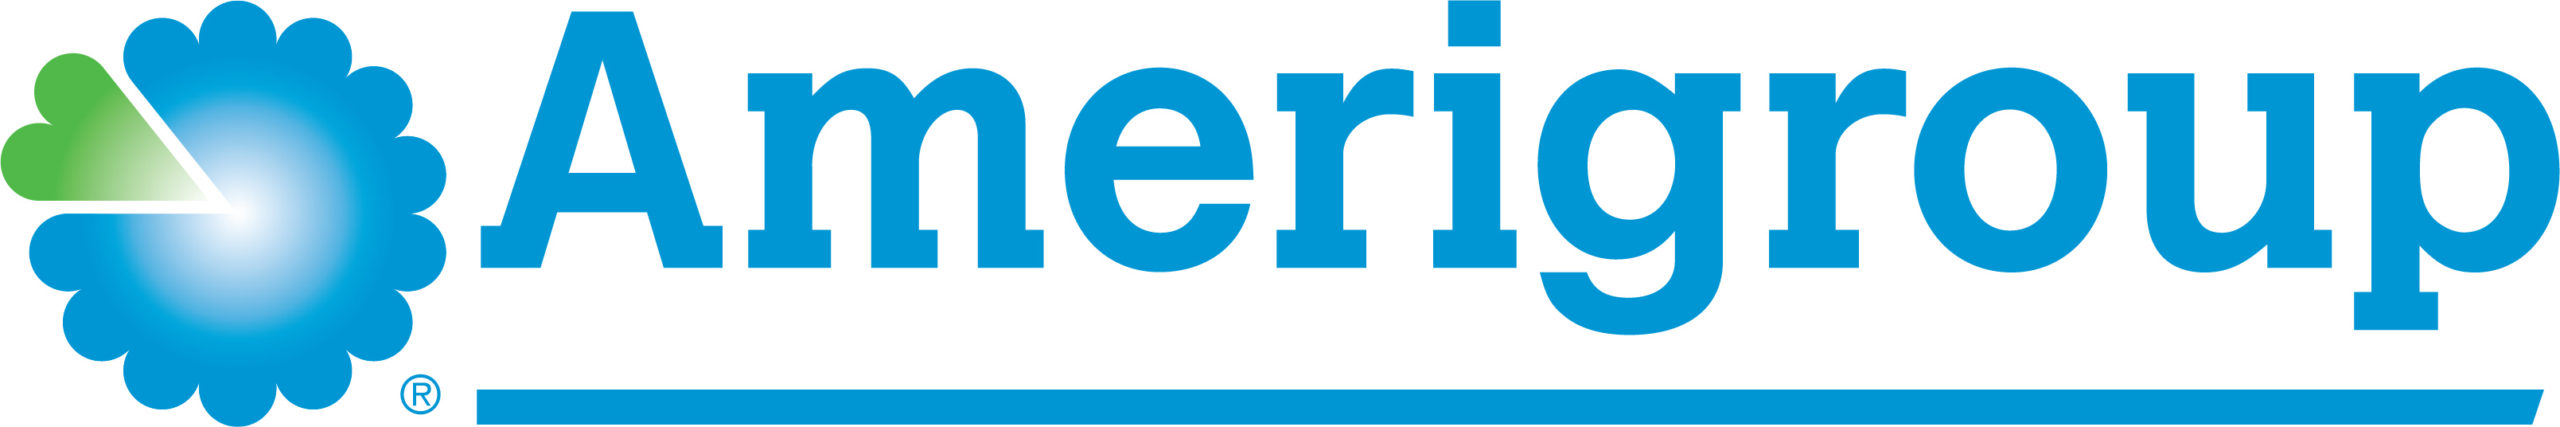 Amerigroup WA BluGreen Logo (JPG version) 2021